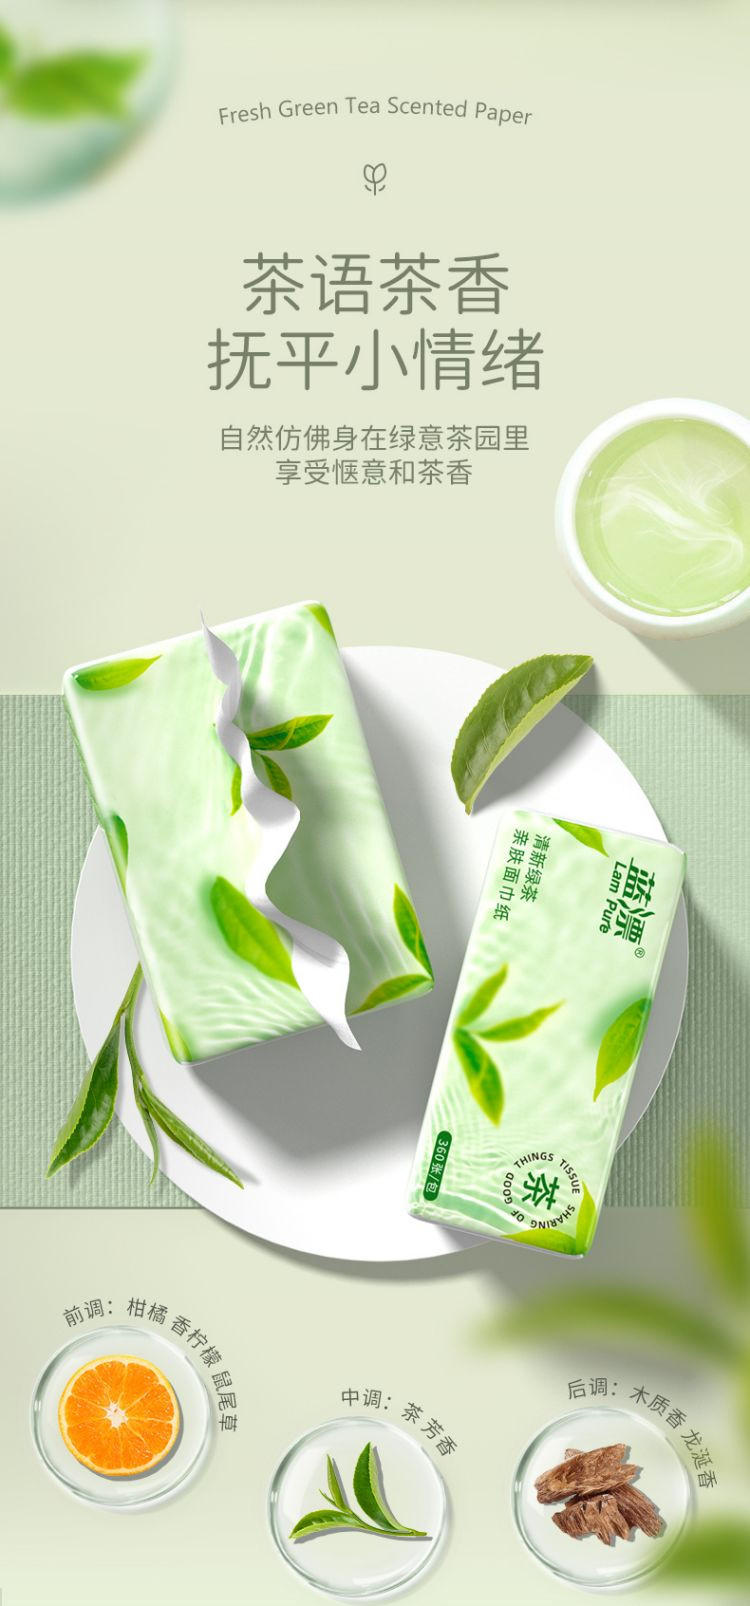 蓝漂LP-41383白色抽纸20包-绿茶香